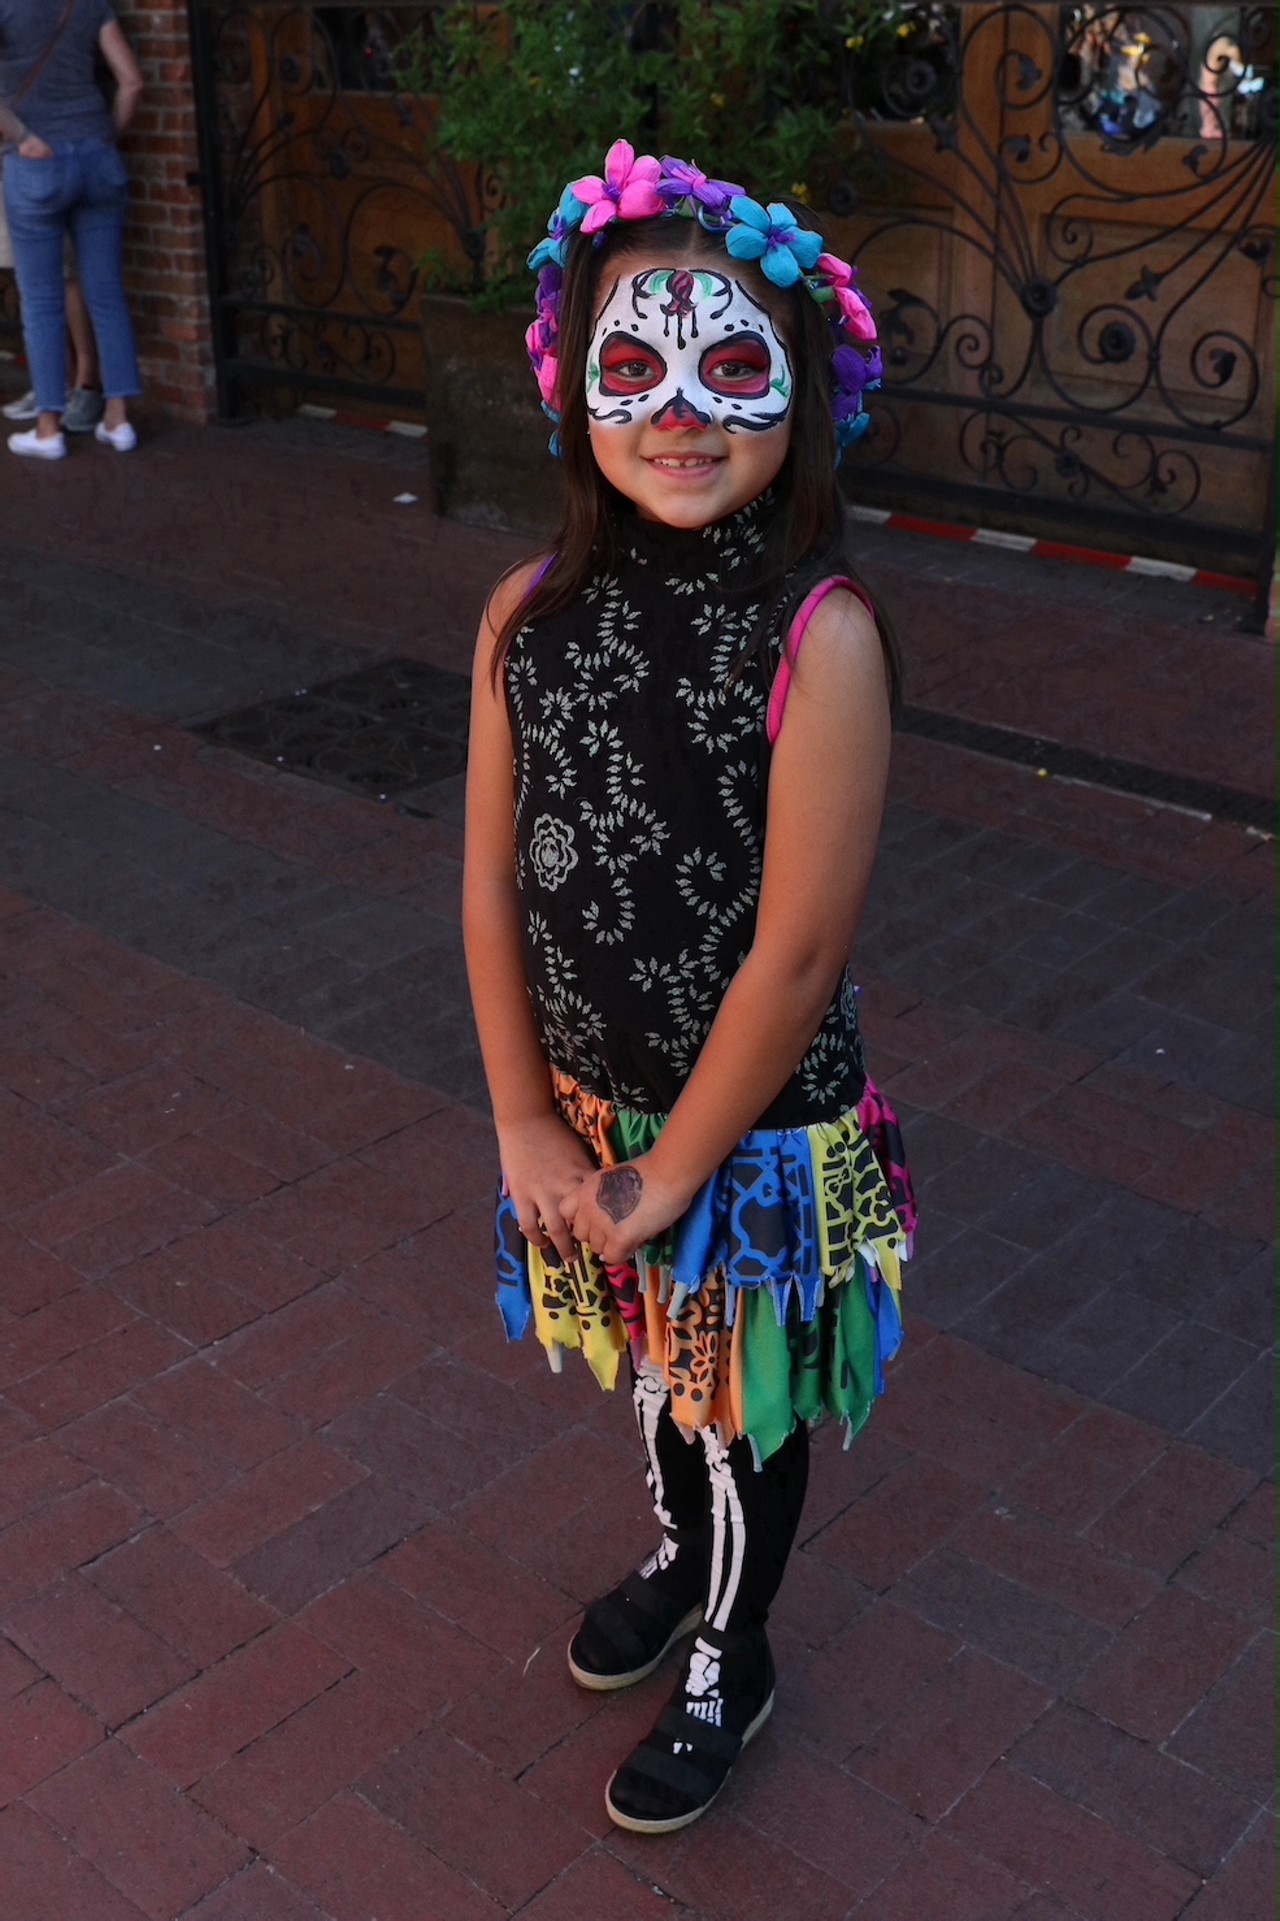 Everything we saw at the Día de los Muertos celebration in San Antonio's Market Square